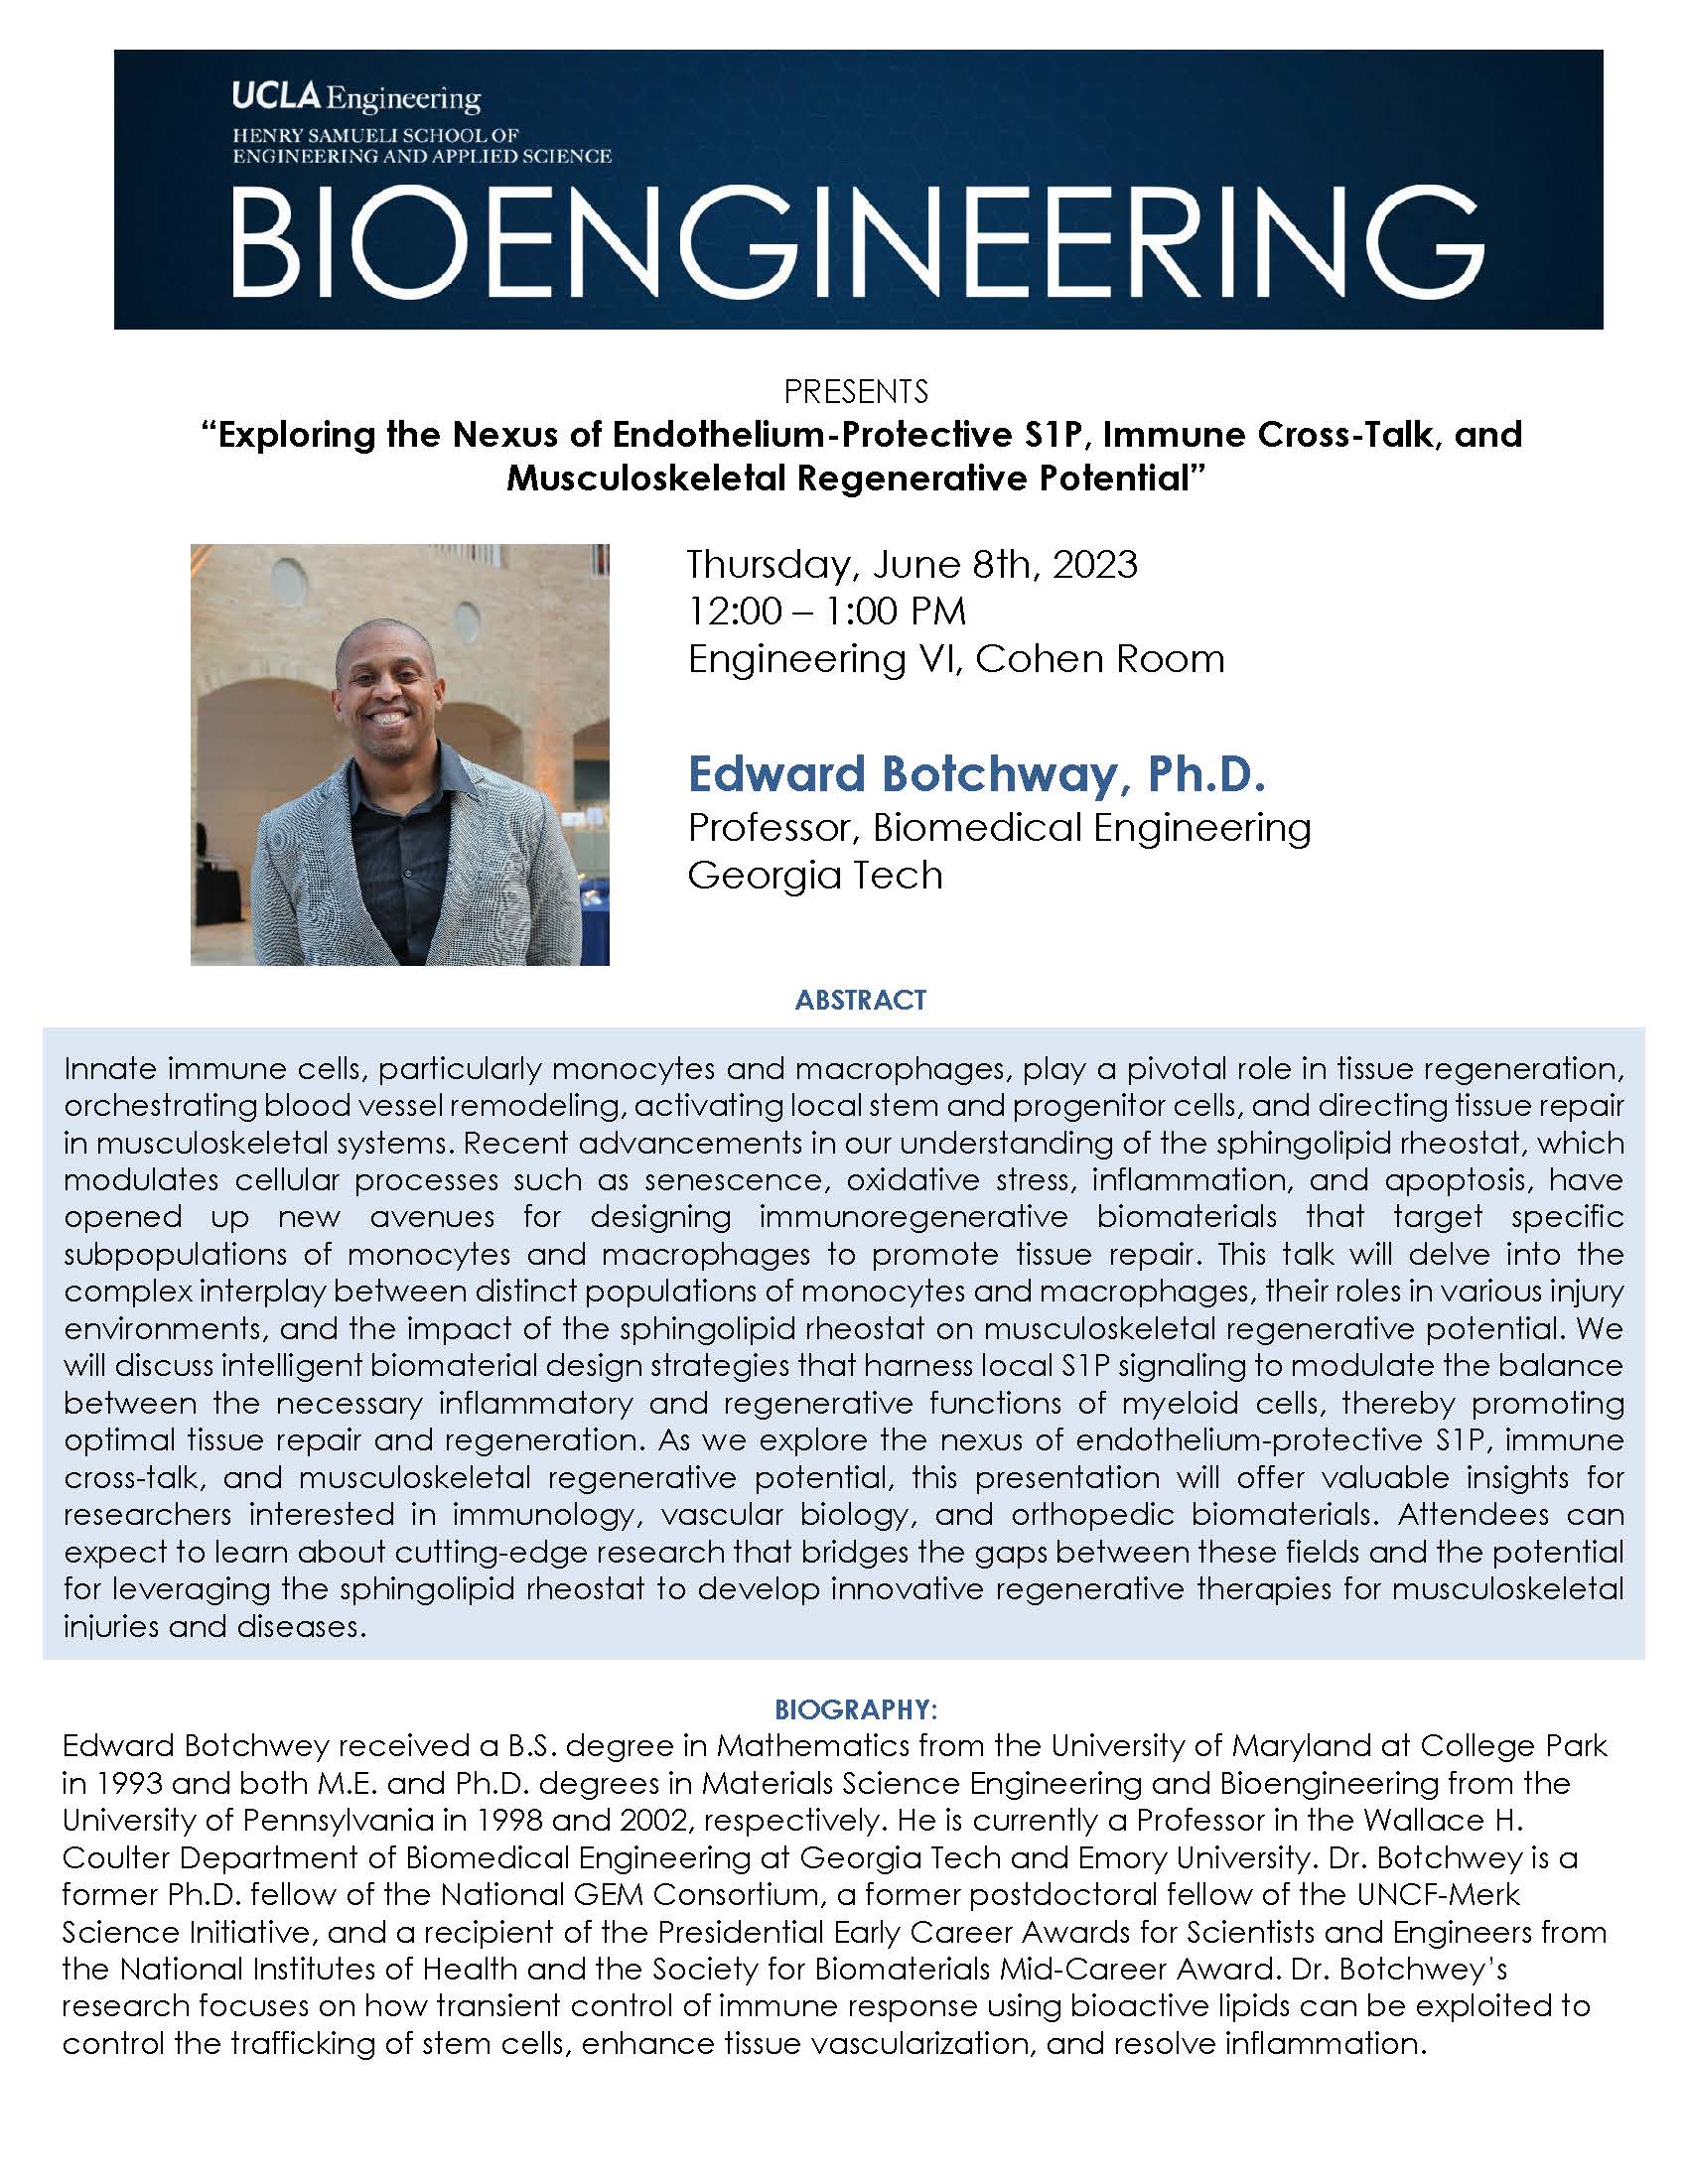 BE 299 Seminar: Edward Botchway, Ph.D.